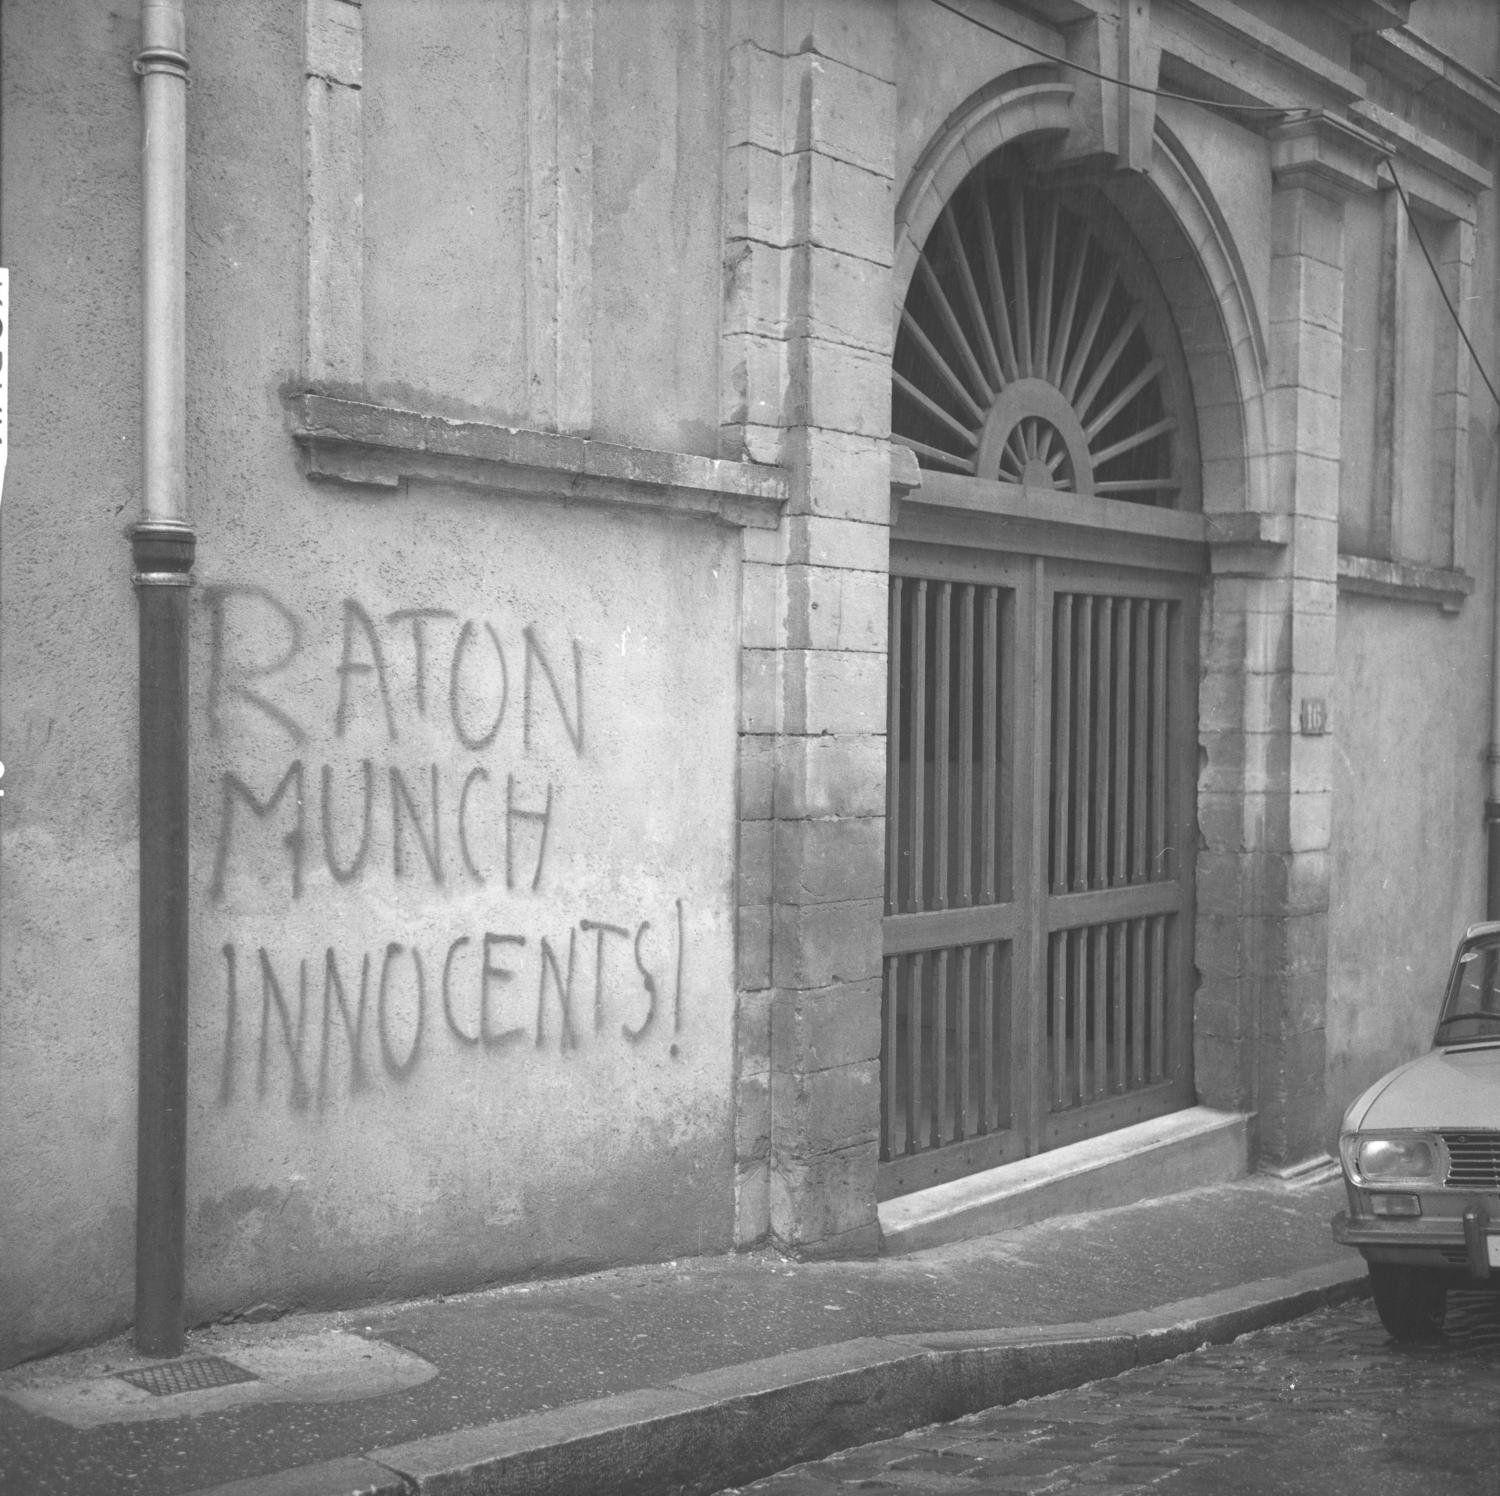 Slogans politiques sur les murs de la ville